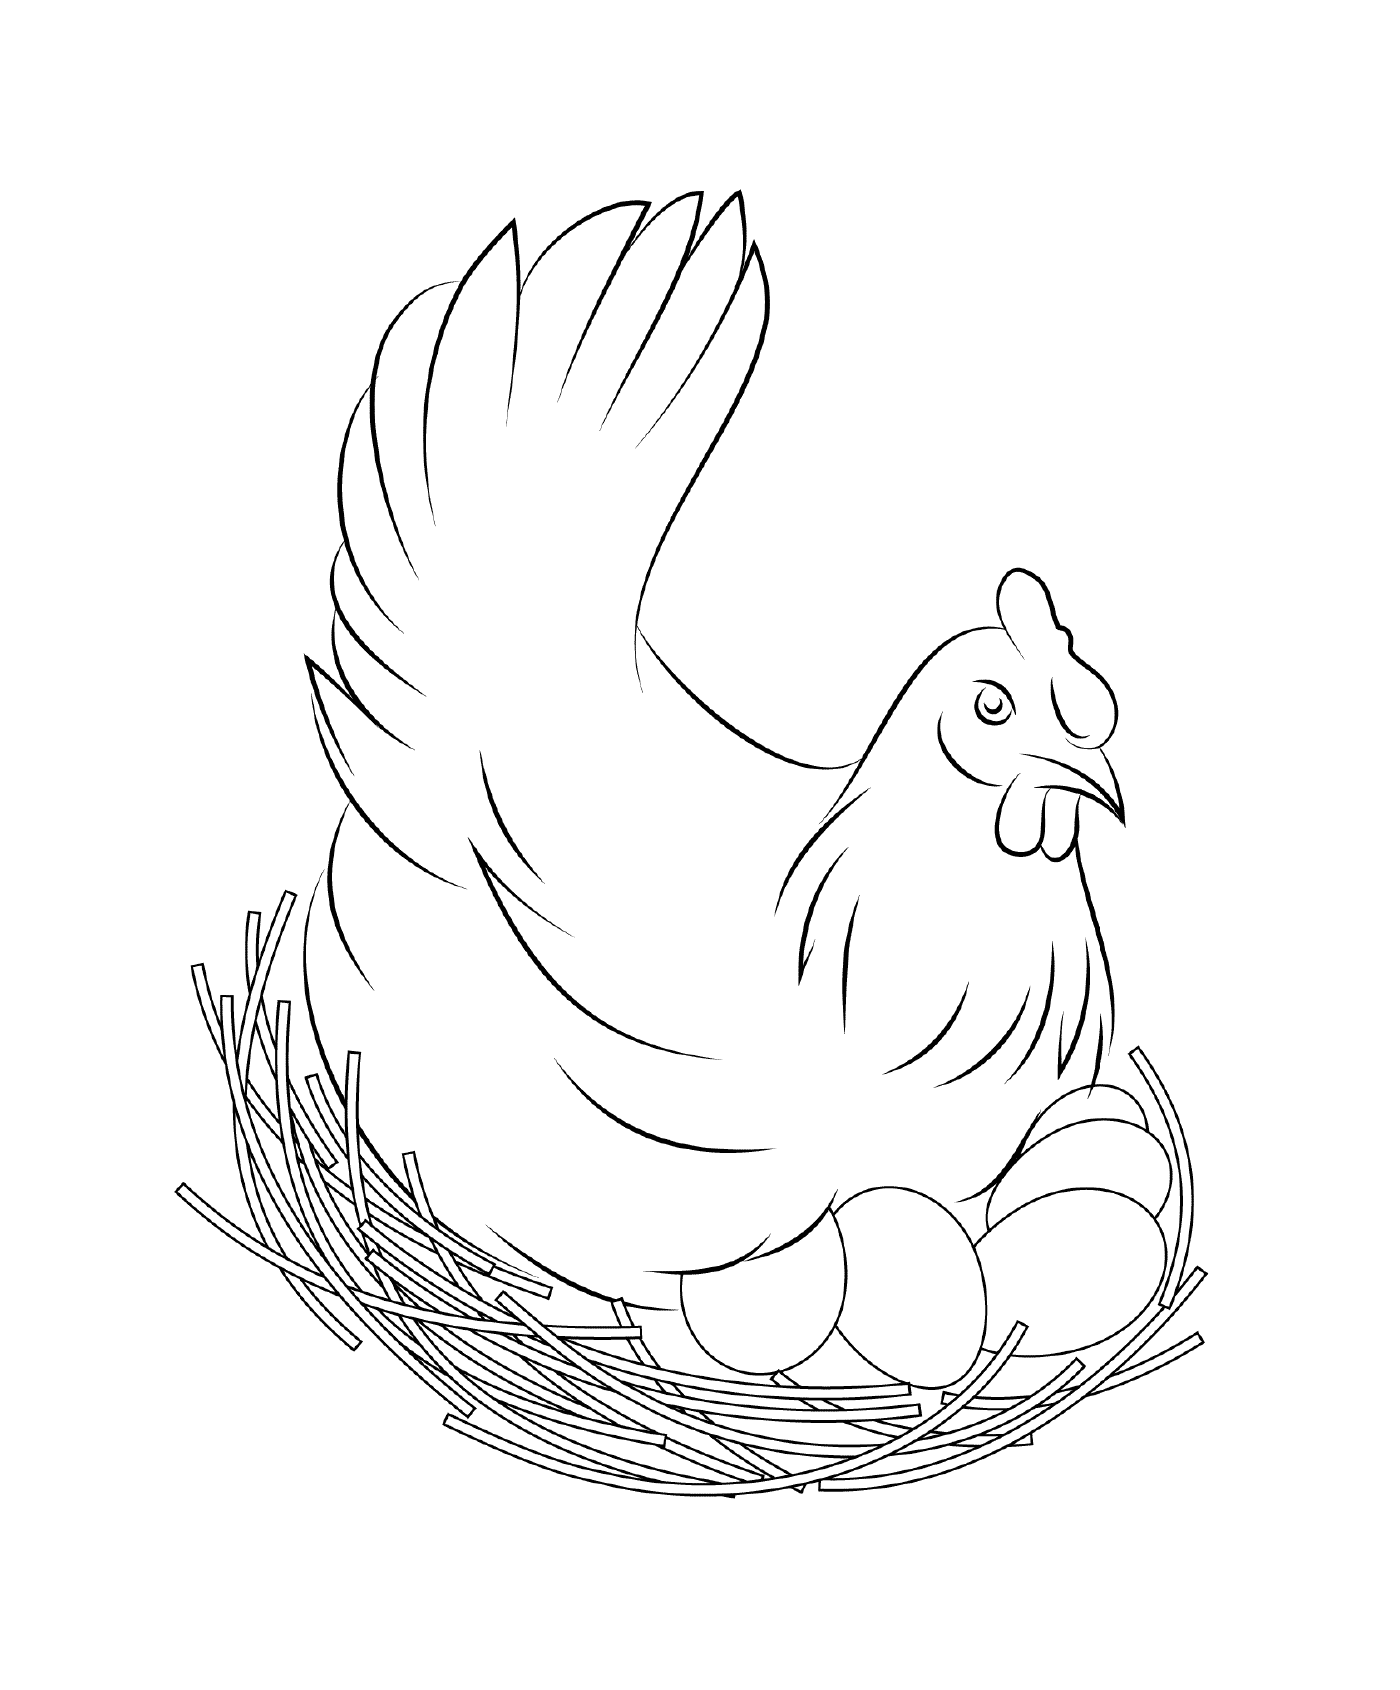  Incubación de pollo en nido 